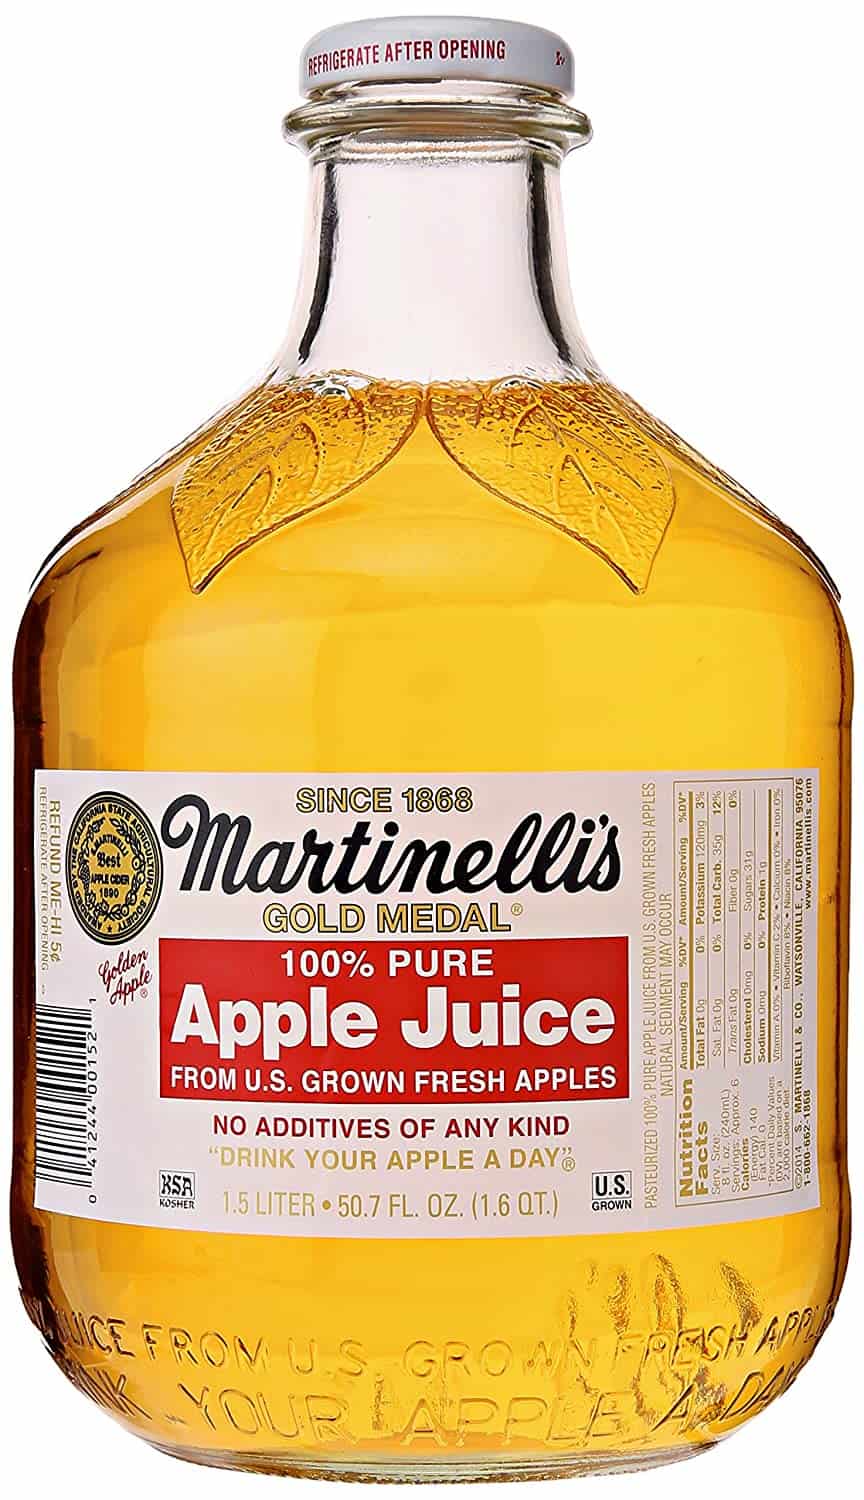 Il miglior sostituto mirin senza alcool: succo di mela